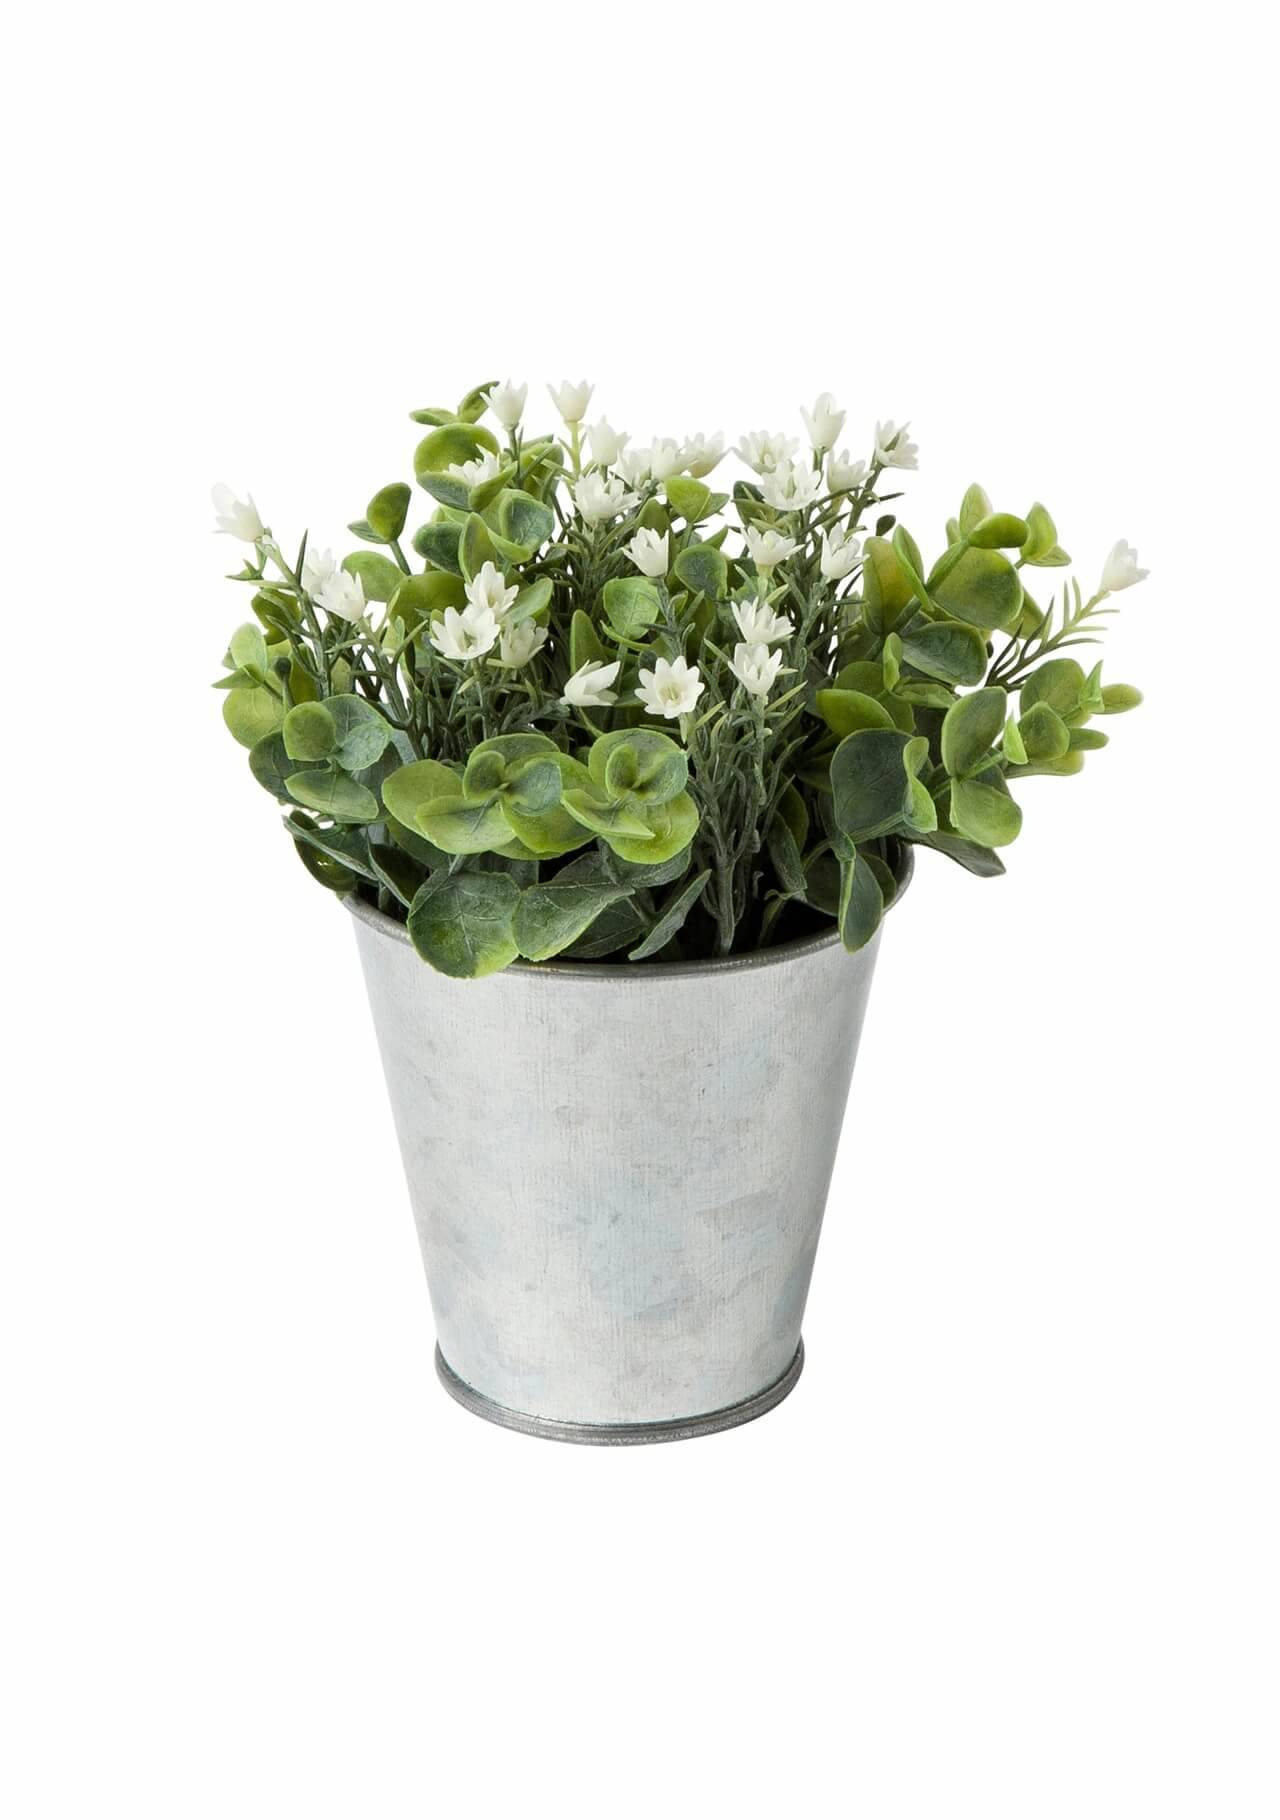 plantas artificiales bonitas planta artificial con flores blancas en maceta de zinc El Corte Inglés, 3,95€